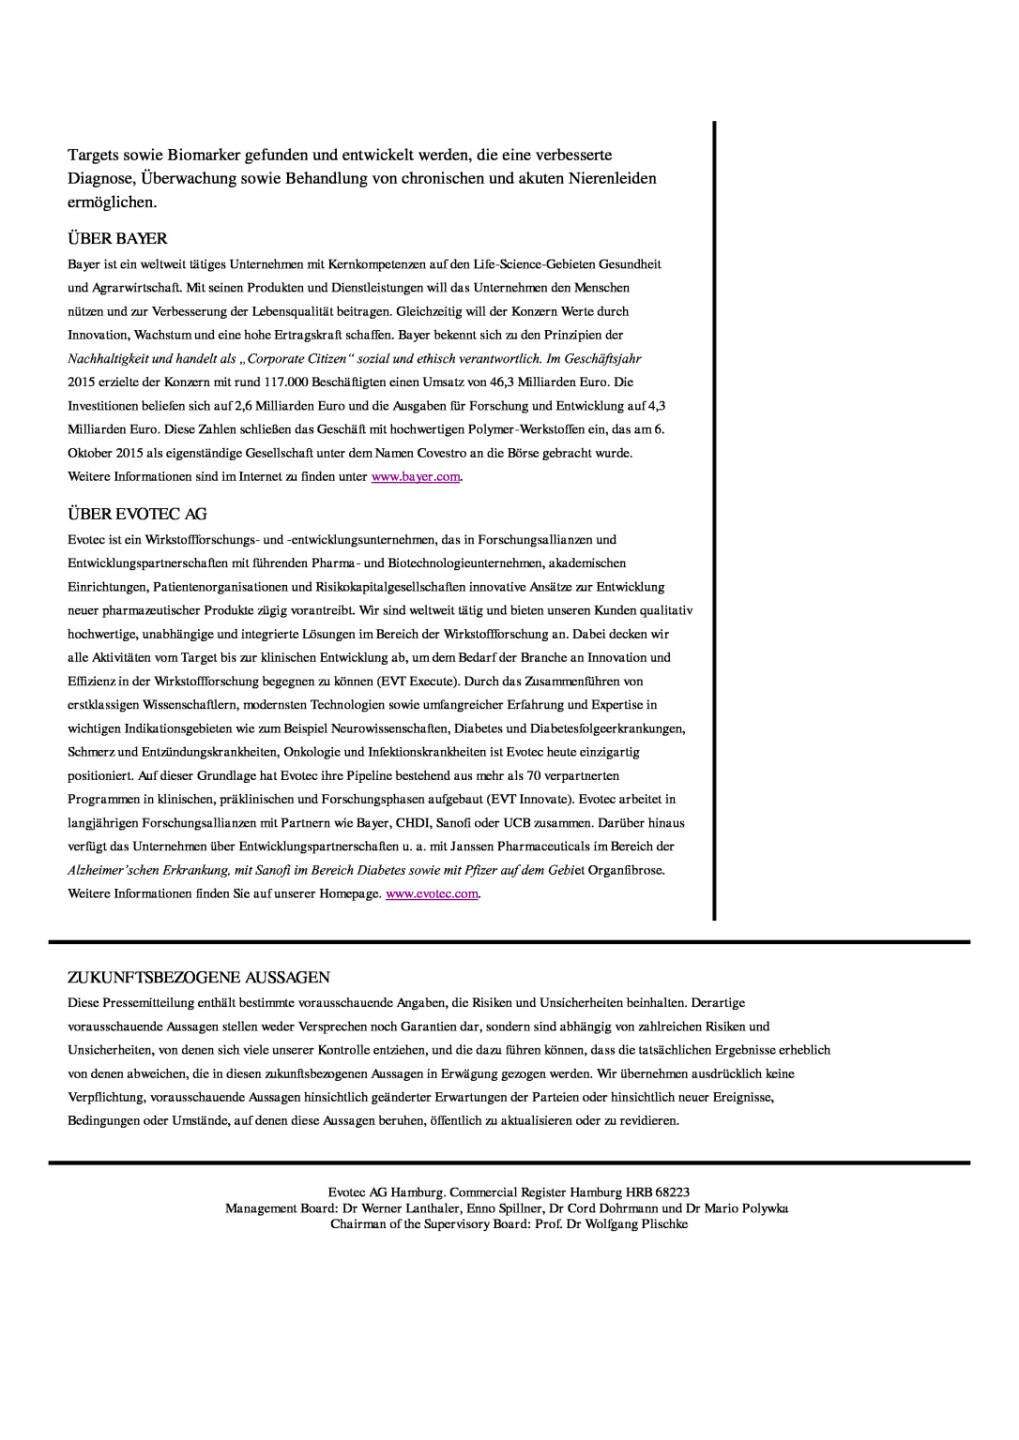 Evotec und Bayer: Entwicklung neuer Therapien im Kampf gegen Nieren-Erkrankungen, Seite 3/3, komplettes Dokument unter http://boerse-social.com/static/uploads/file_1806_evotec_und_bayer_entwicklung_neuer_therapien_im_kampf_gegen_nieren-erkrankungen.pdf